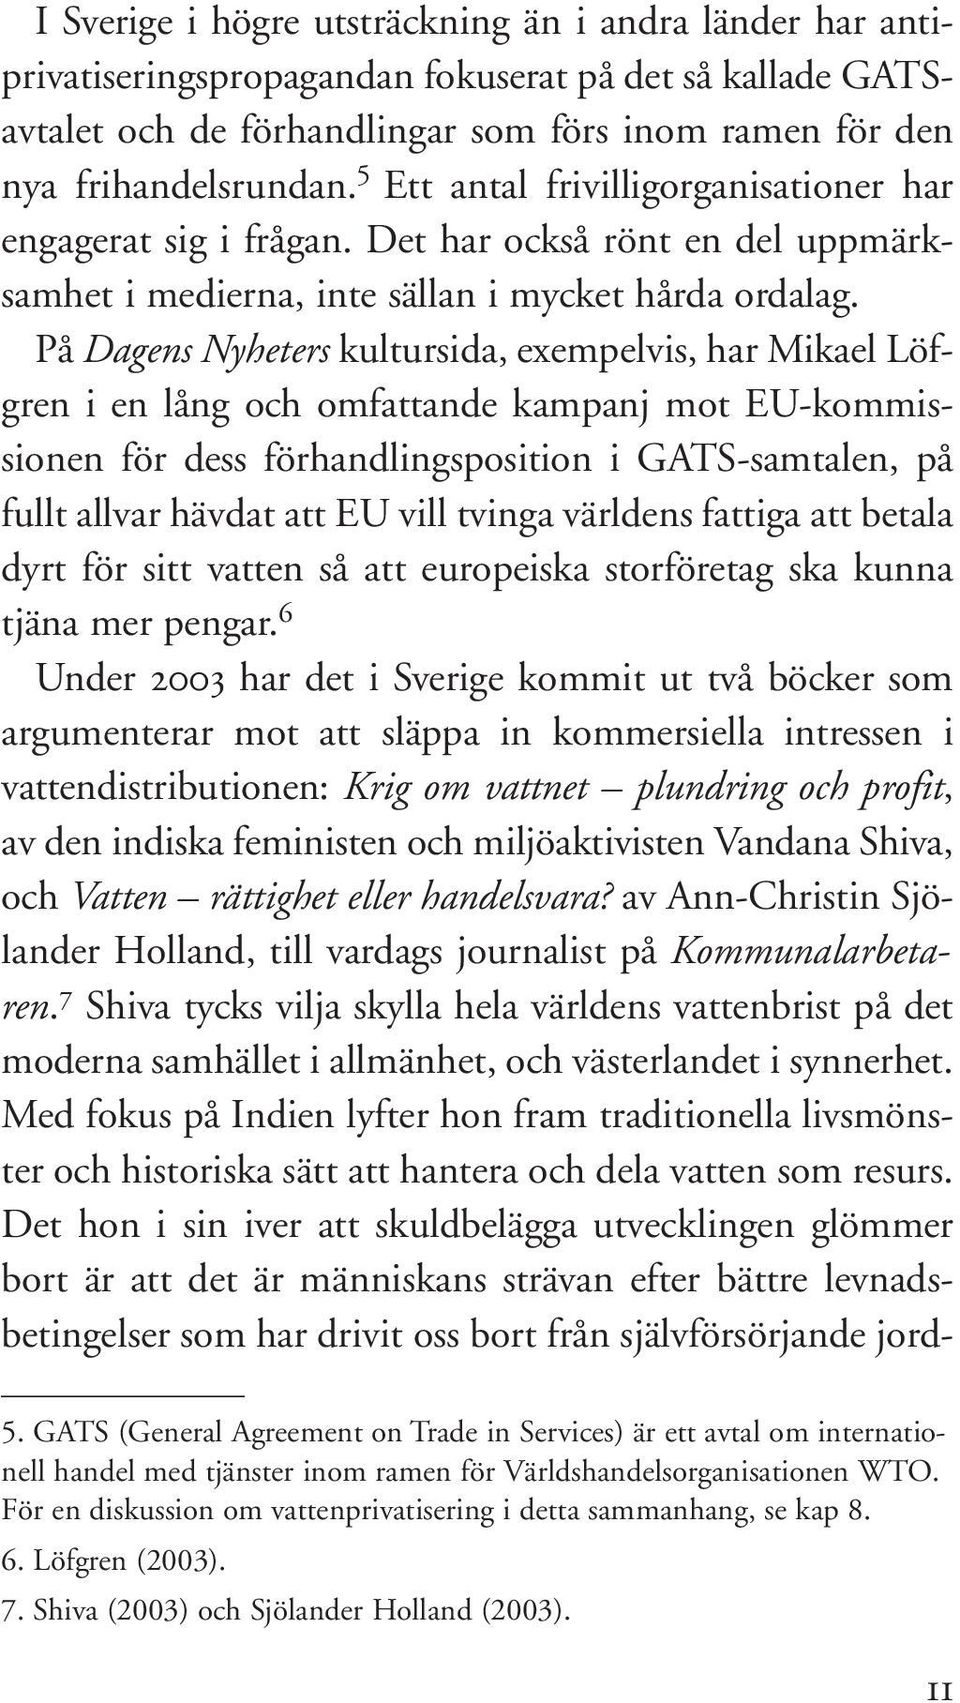 På Dagens Nyheters kultursida, exempelvis, har Mikael Löfgren i en lång och omfattande kampanj mot EU-kommissionen för dess förhandlingsposition i GATS-samtalen, på fullt allvar hävdat att EU vill